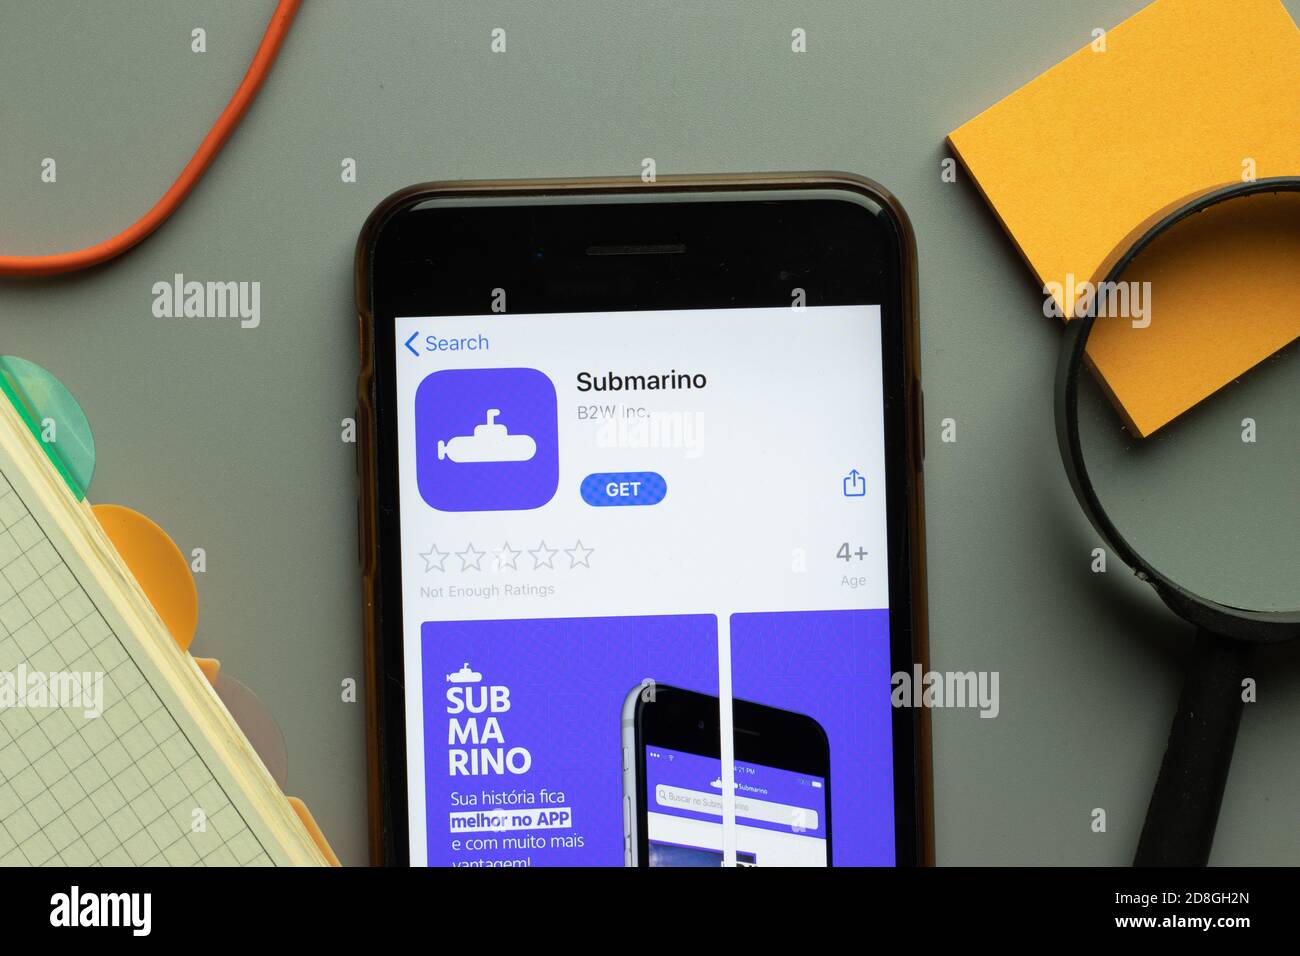 New York, USA - 26 ottobre 2020: Logo dell'app mobile Submarino sullo schermo del telefono, editoriale illustrativo Foto Stock